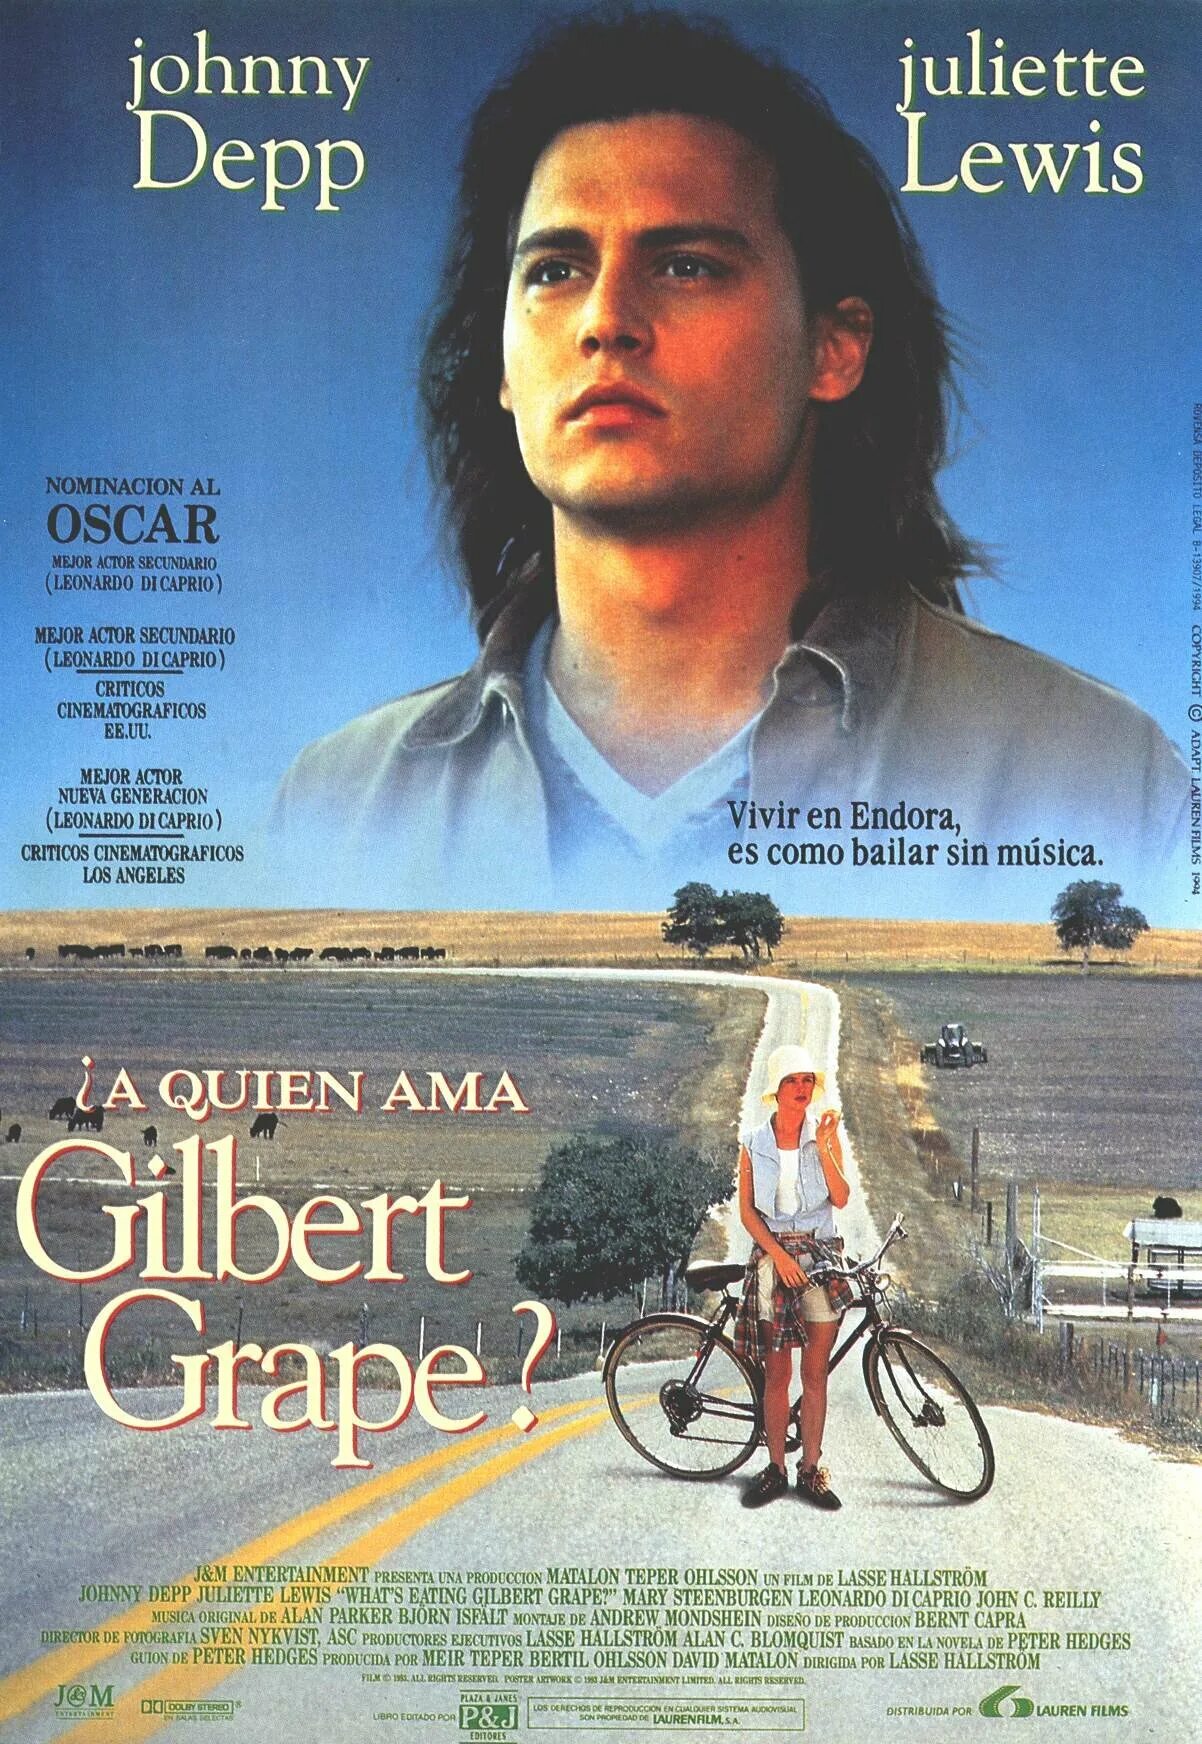 Что гложет Гилберта Грейпа? (1993). What's eating Gilbert grape 1993 poster. What's eating Gilbert grape poster. Eating gilbert